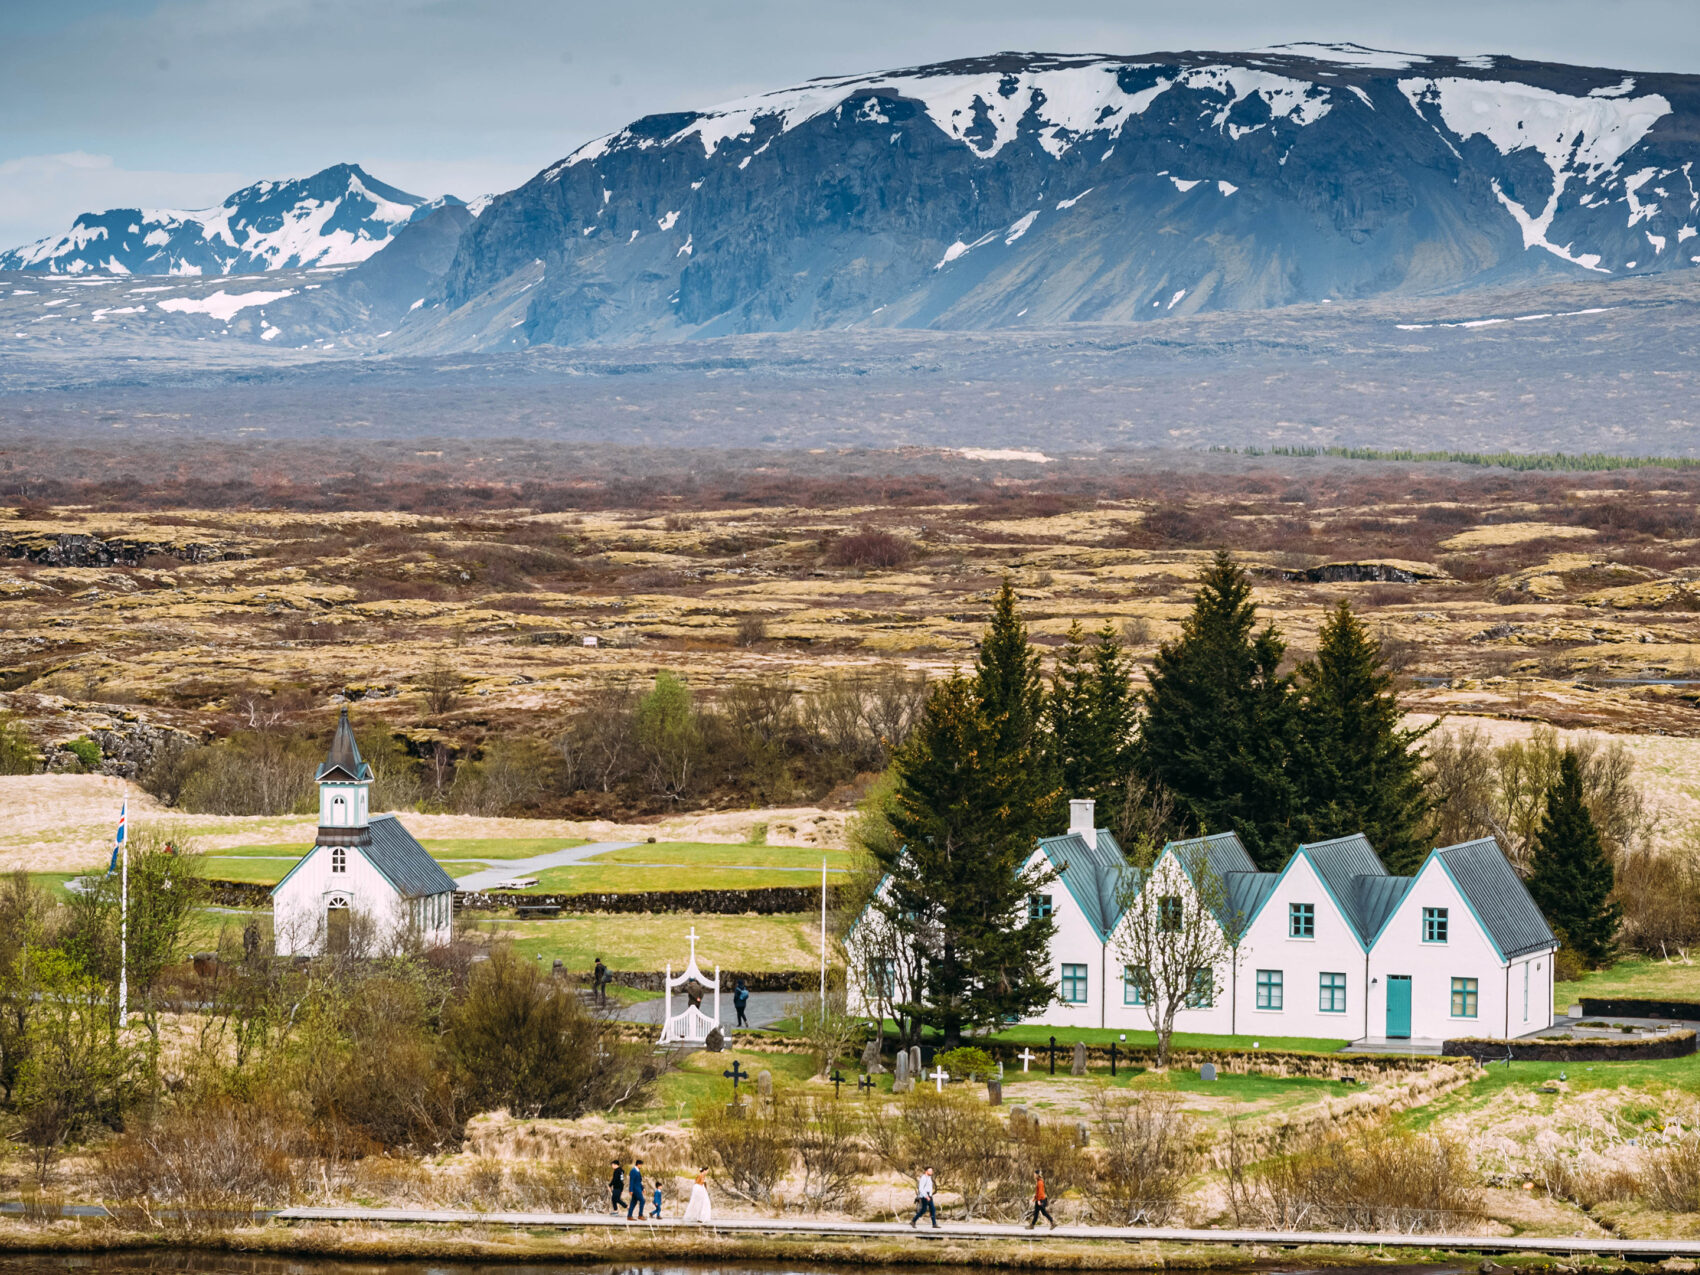 Thingvellir Kirche Island; 
Kirche und 5 weiße Häuser mit grünem Dach, die aneinandergereiht sind
Im Hintergrund kahle und karge Ebene, dahinter Berge leicht mit Schnee bedeckt